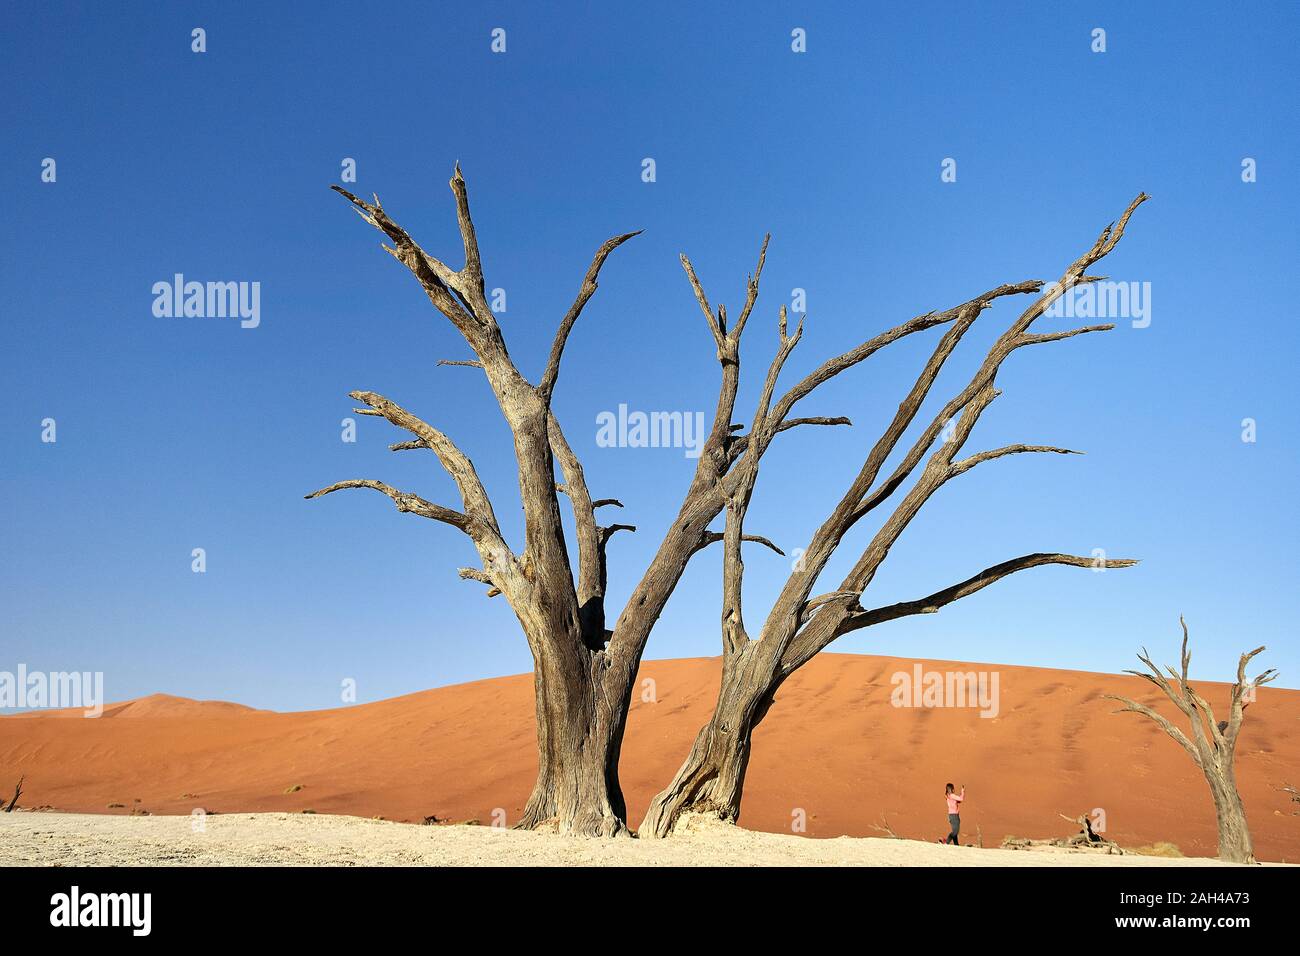 Dead trees in Deadvlei, Sossusvlei, Namib desert, Namibia Stock Photo